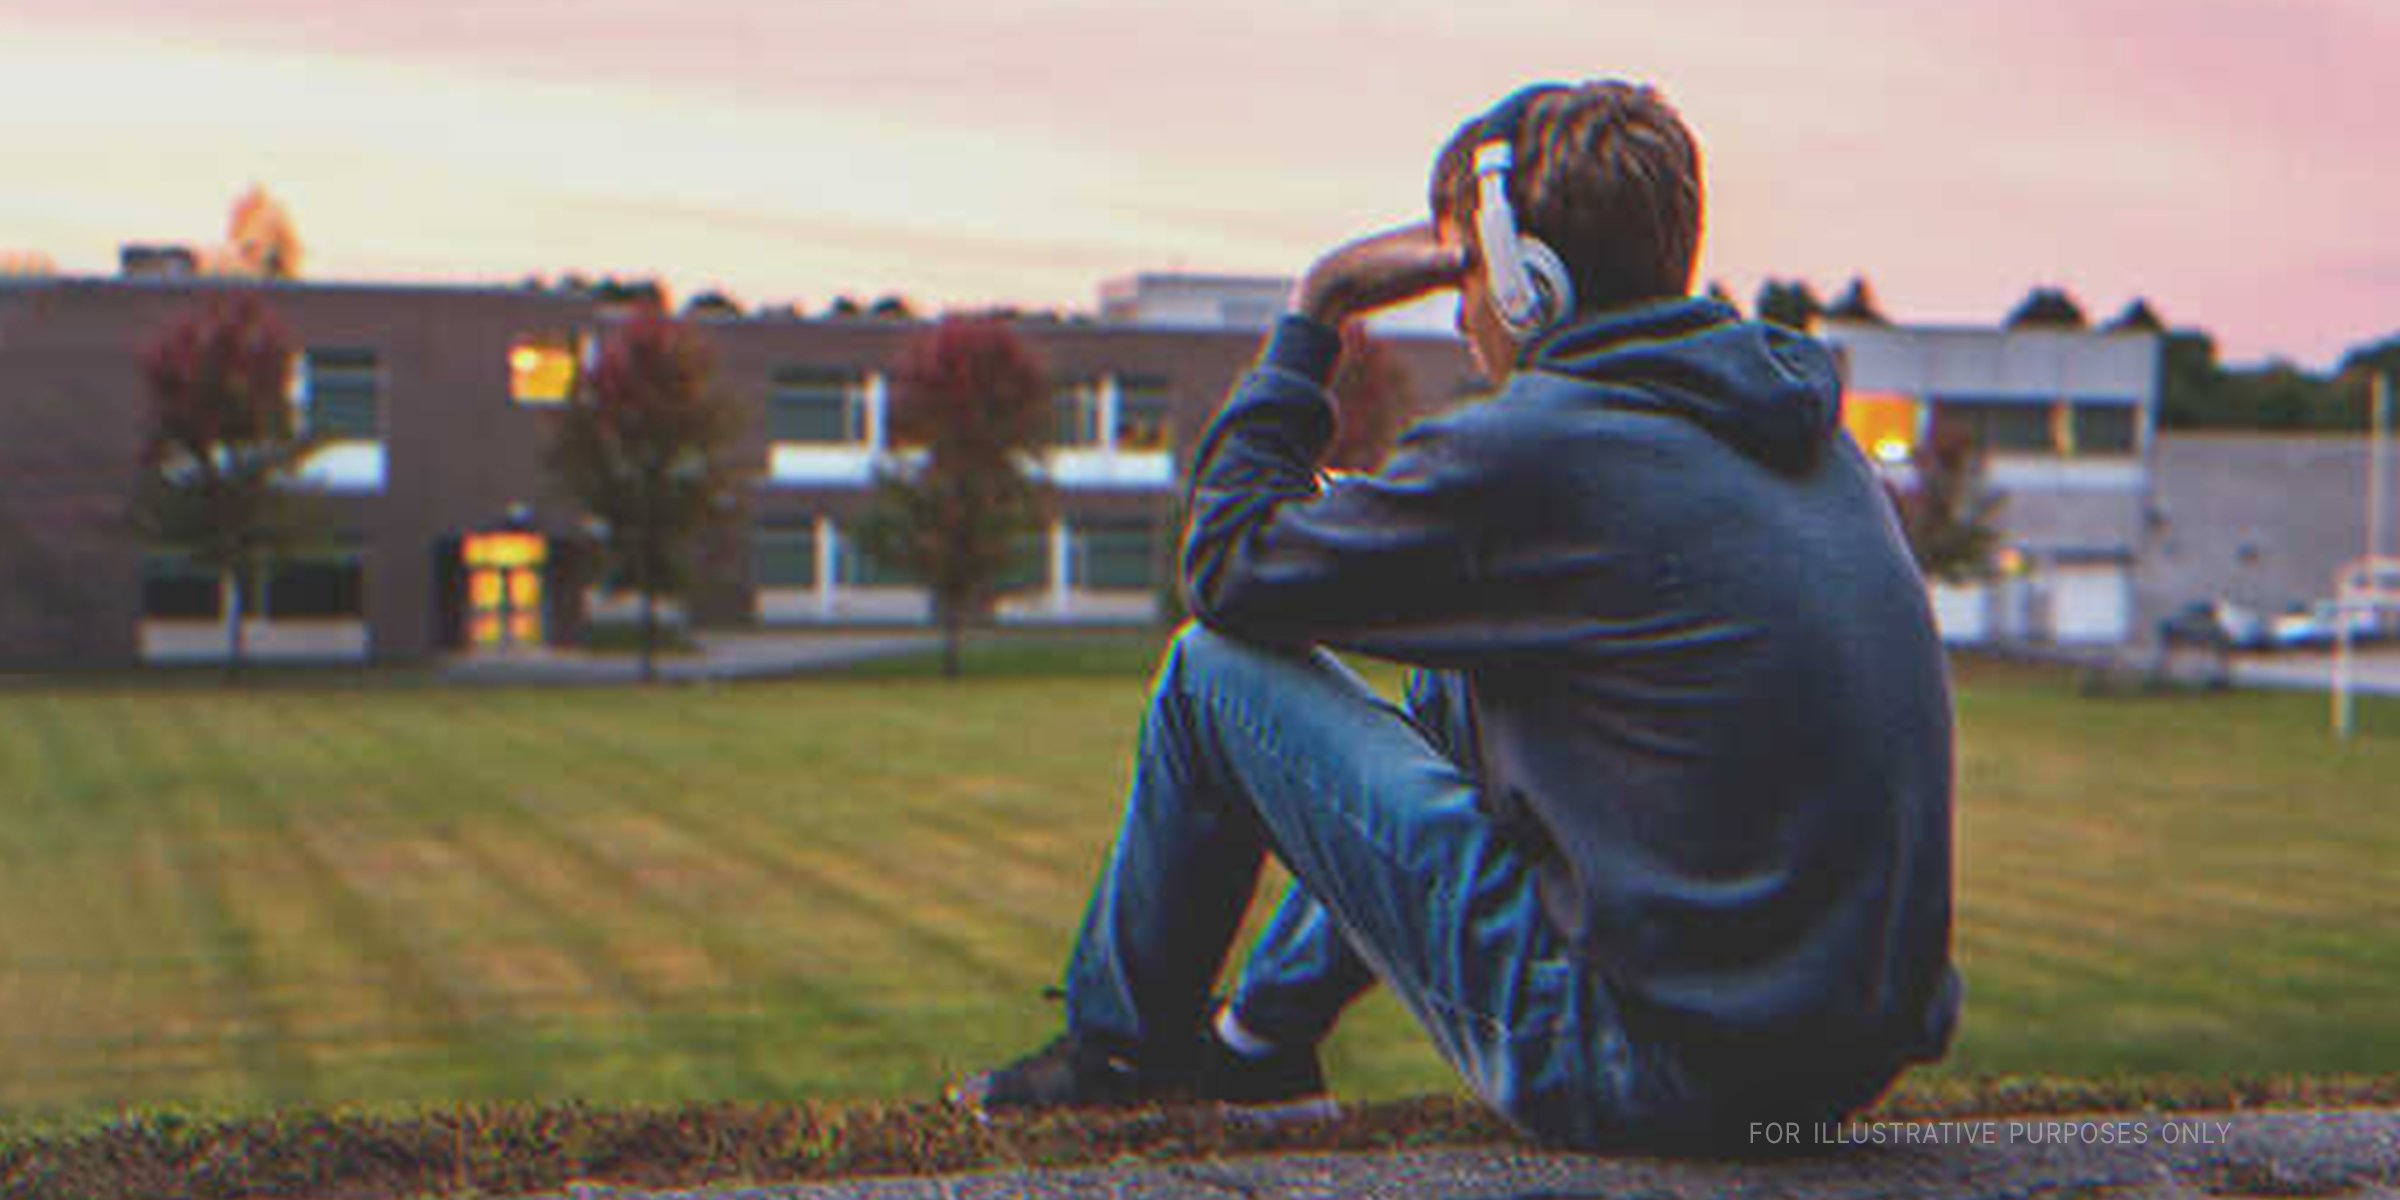 Trauriger Teenager, der alleine sitzt | Quelle: Shutterstock